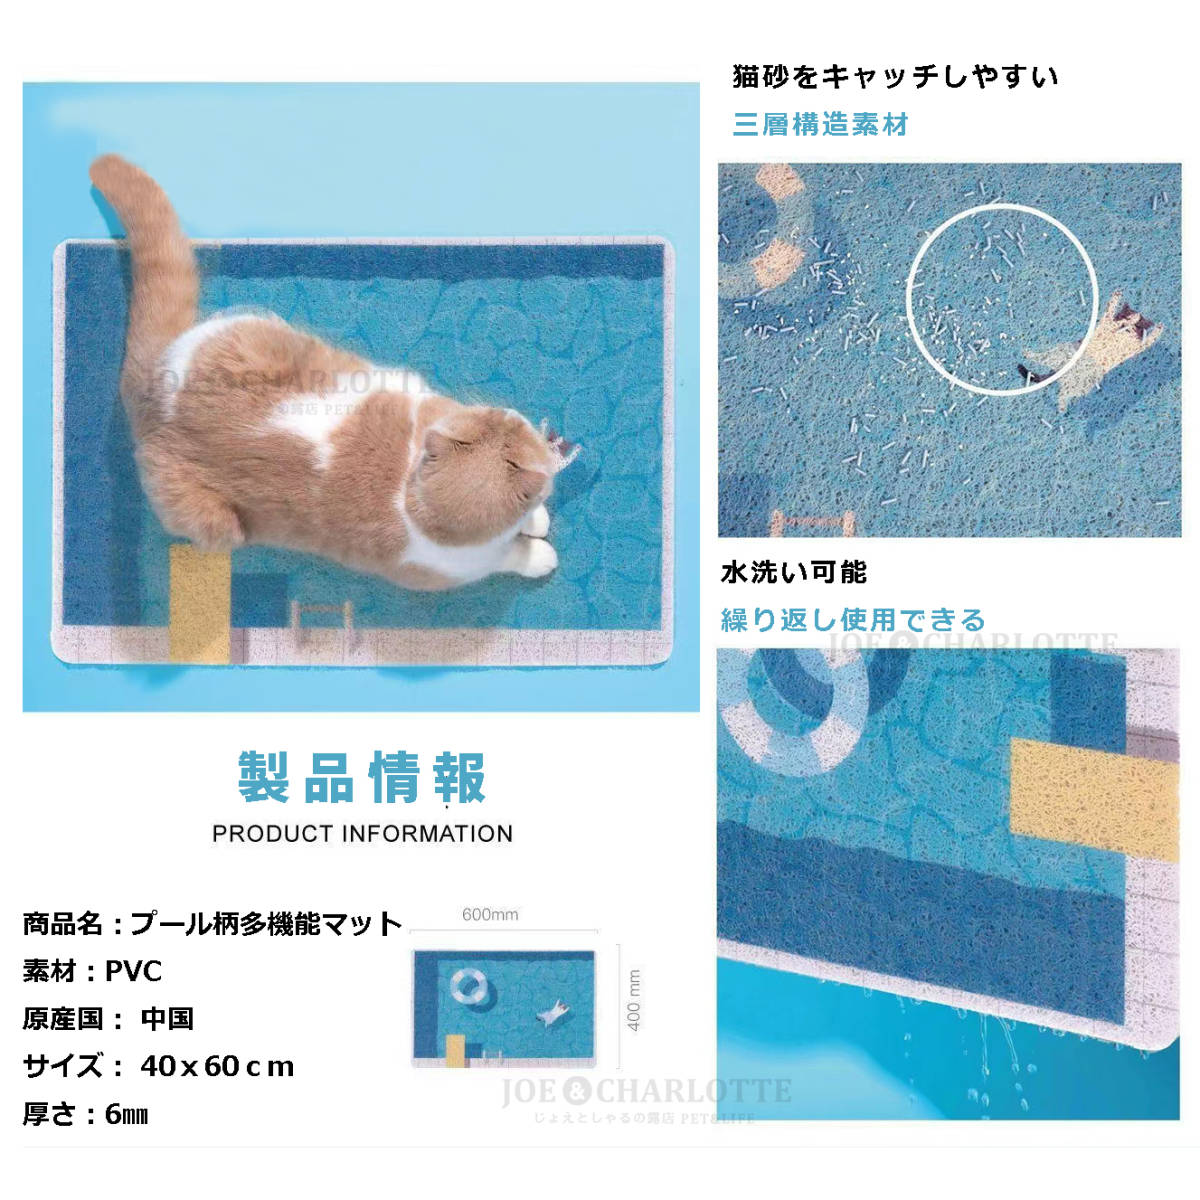 プール柄 多機能猫砂マット 玄関マット 浮き輪 猫柄 滑り止め 40×60cm